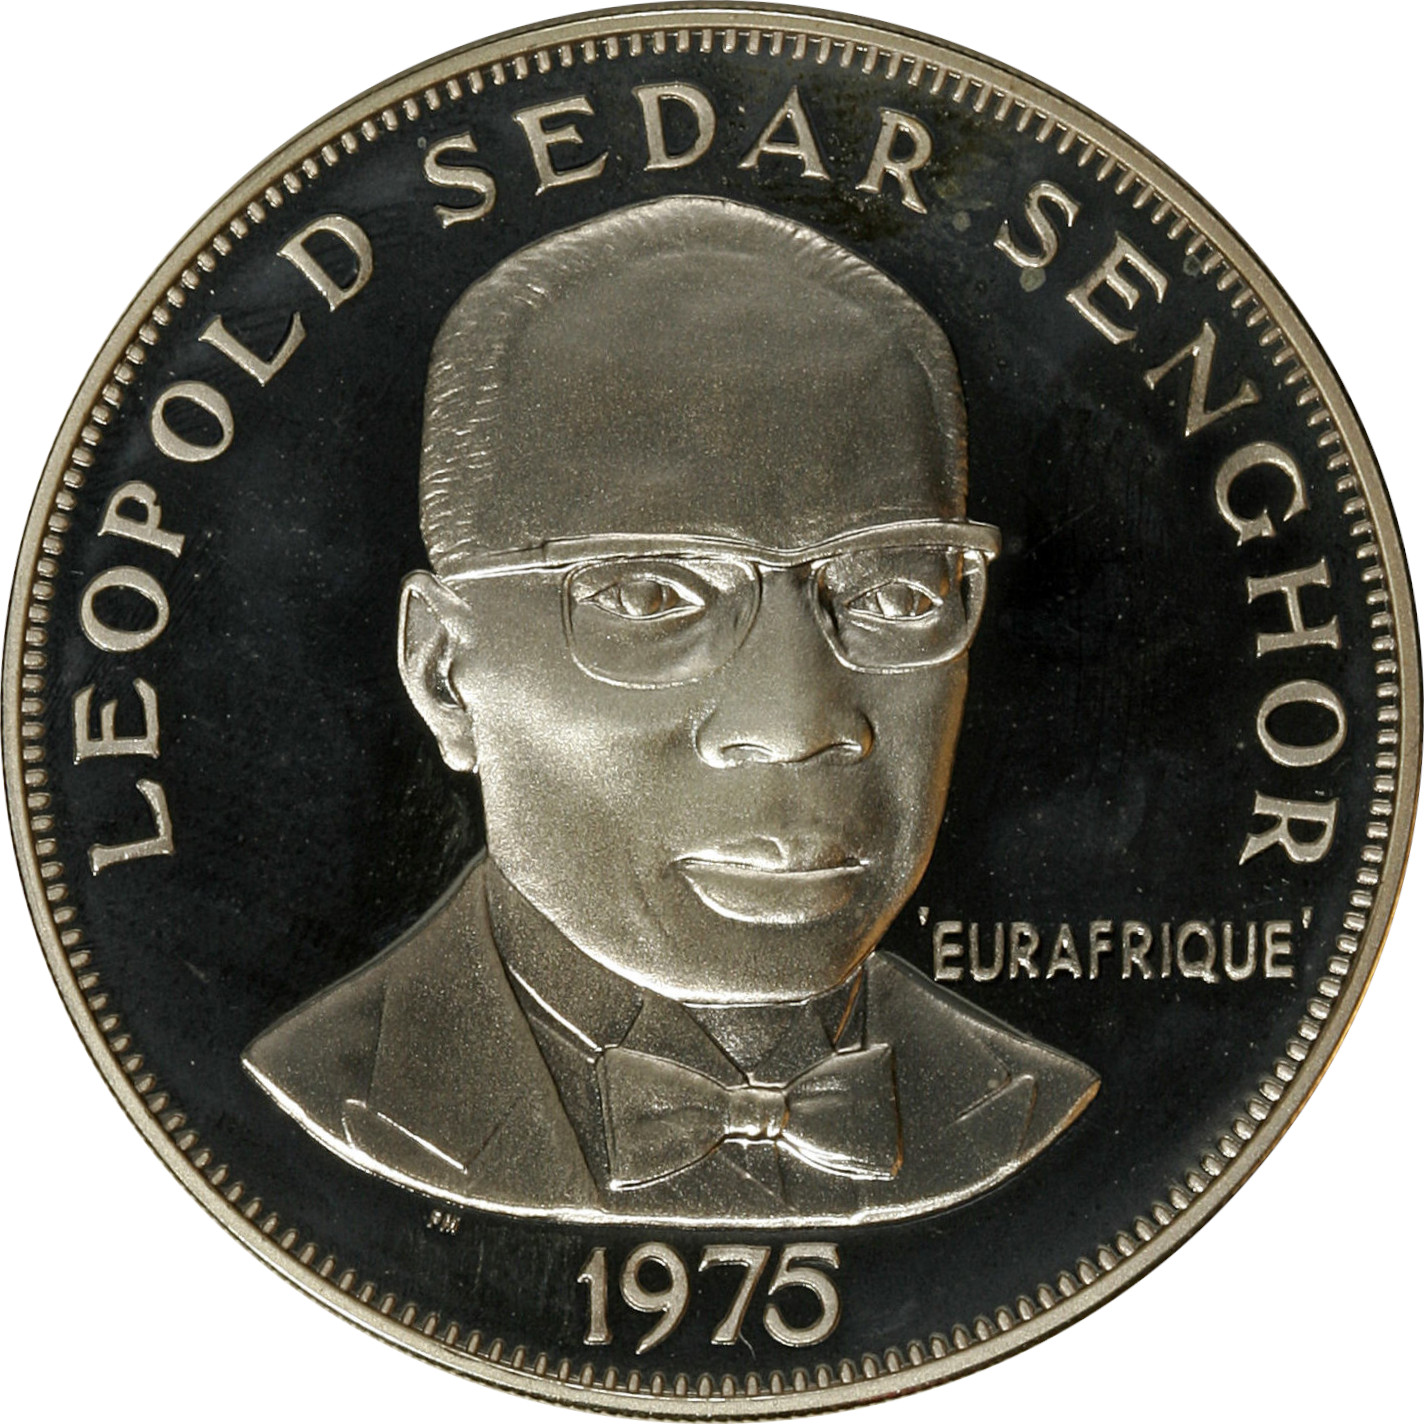 50 francs - Eurafrique - 25 years